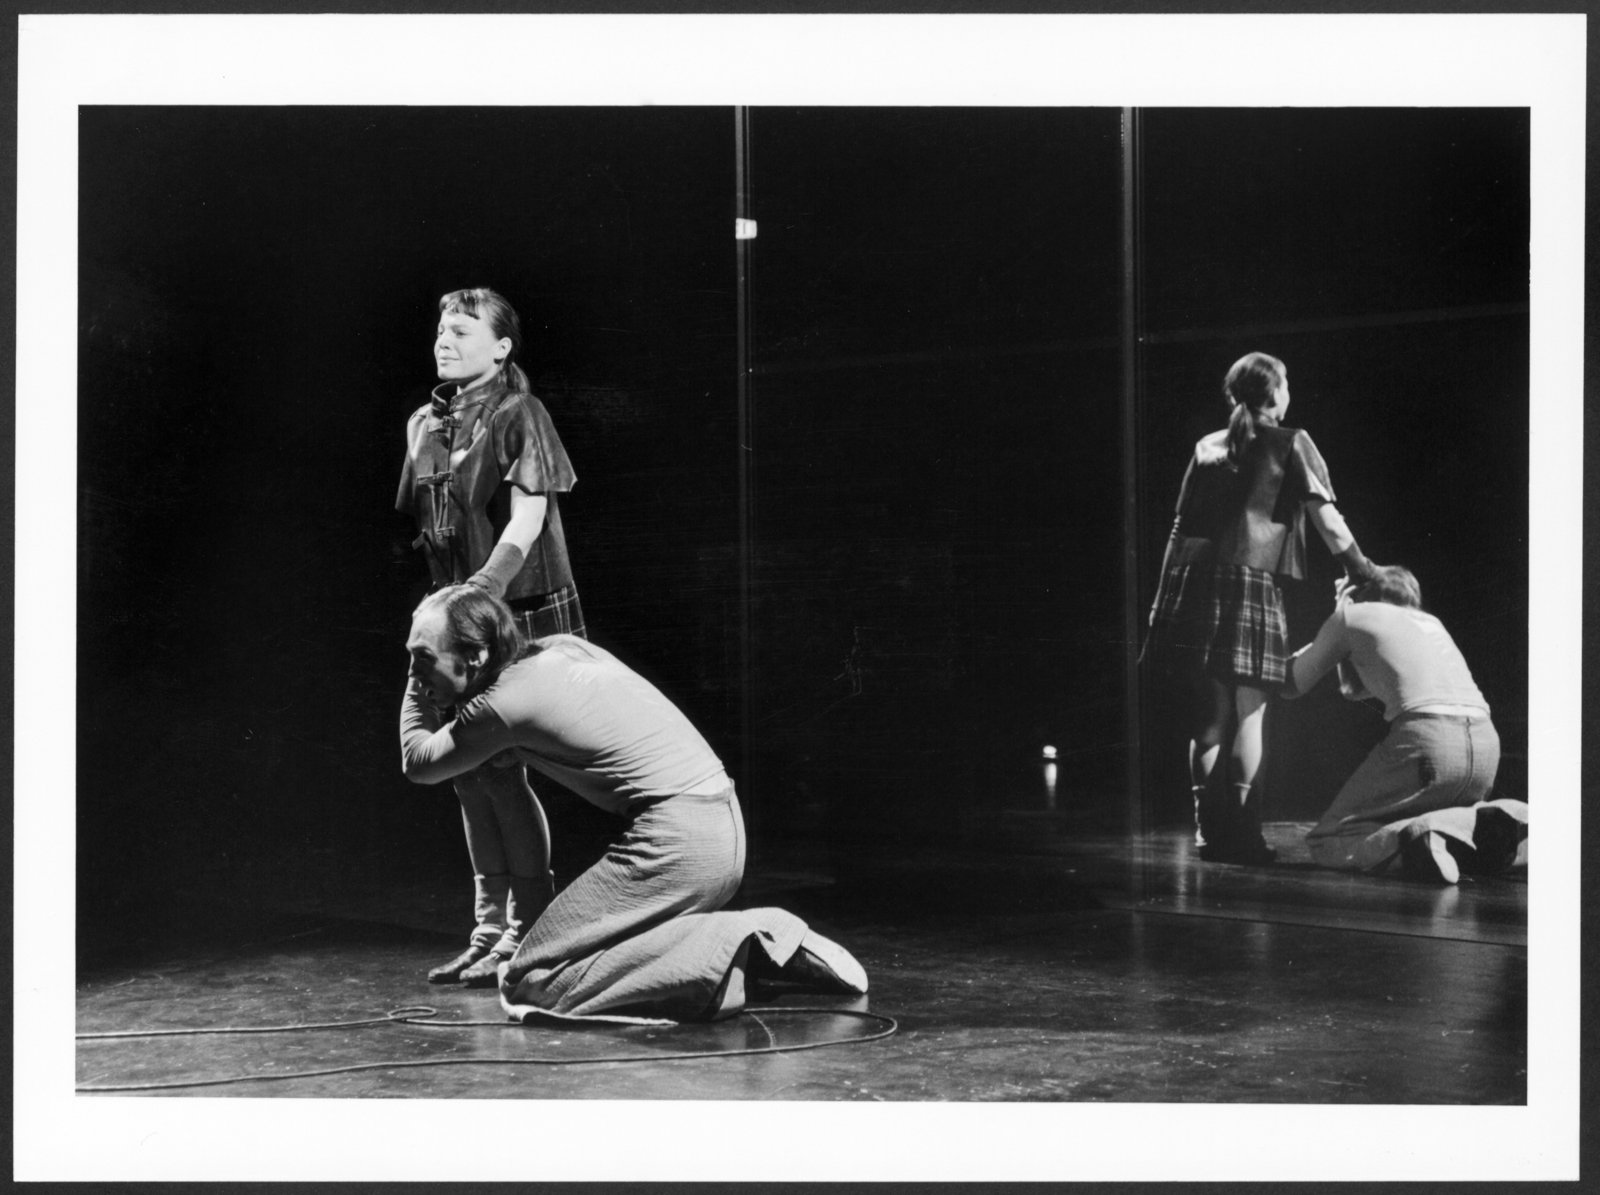 Bild der Studioinszenierung "Macbeth" an der Hochschule für Schauspielkunst Ernst Busch (Hochschule für Schauspielkunst Ernst Busch Berlin RR-F)